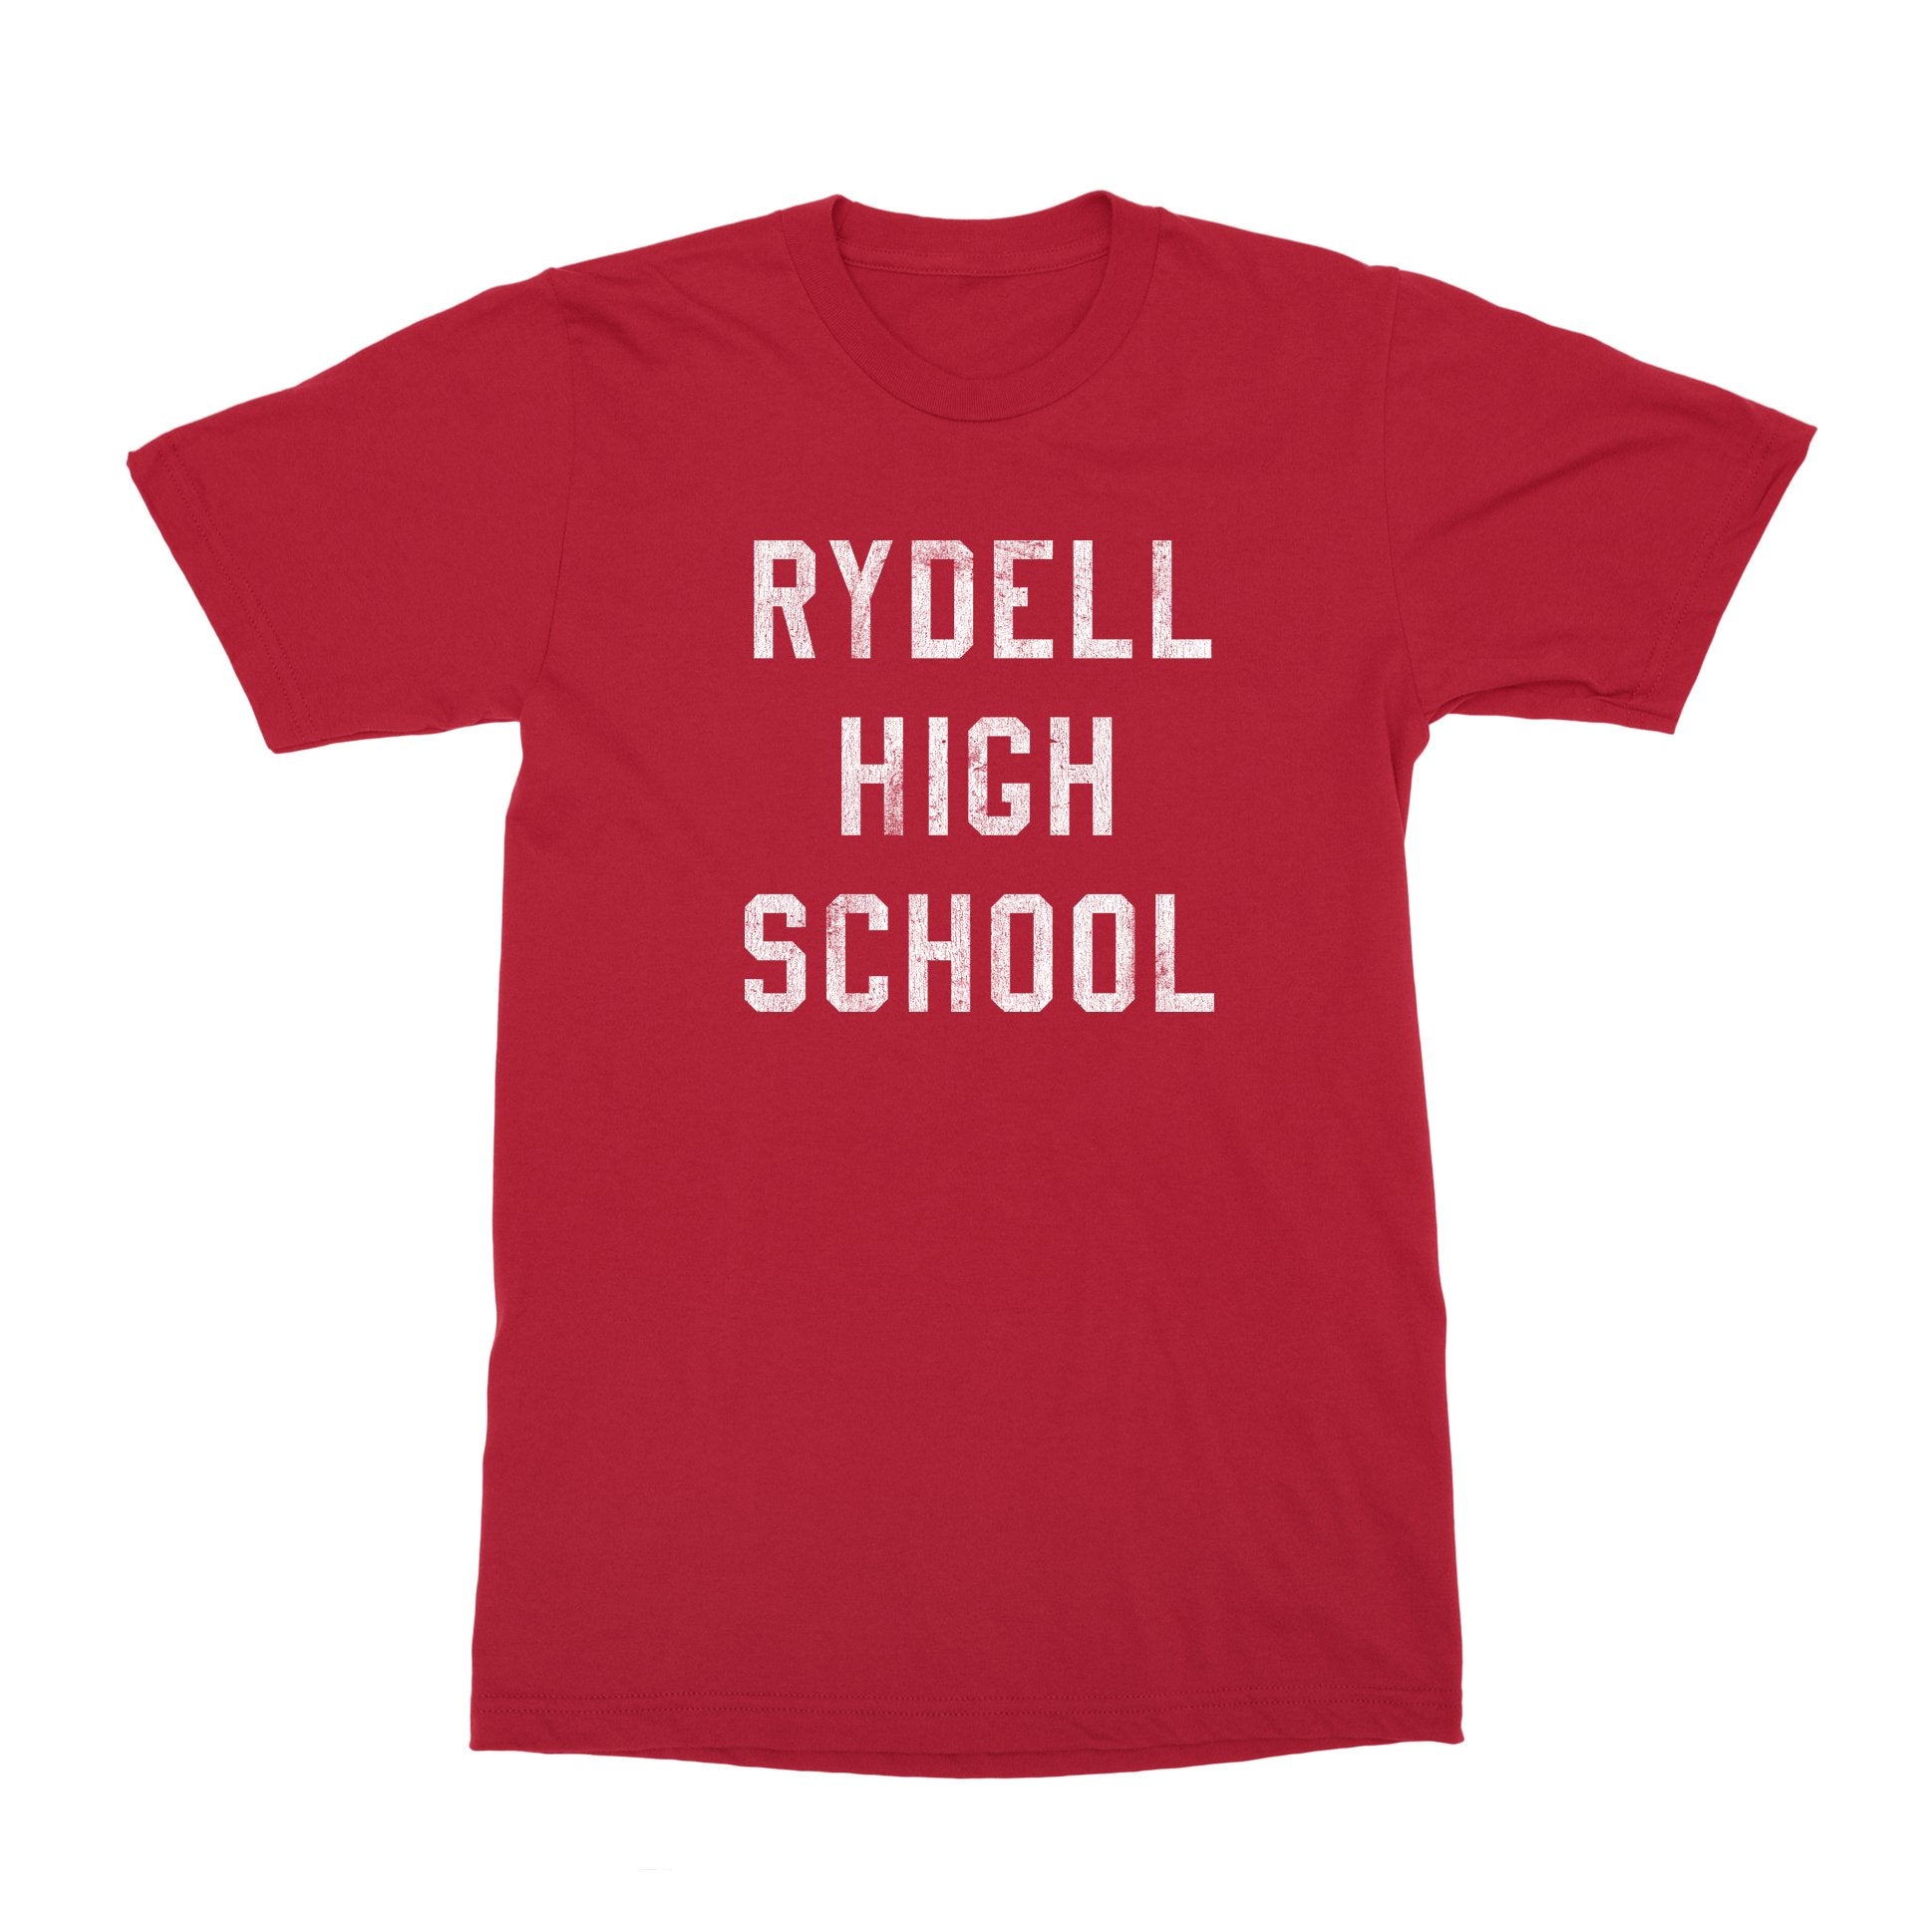 Rydell High School T-Shirt - Black Cat MFG -